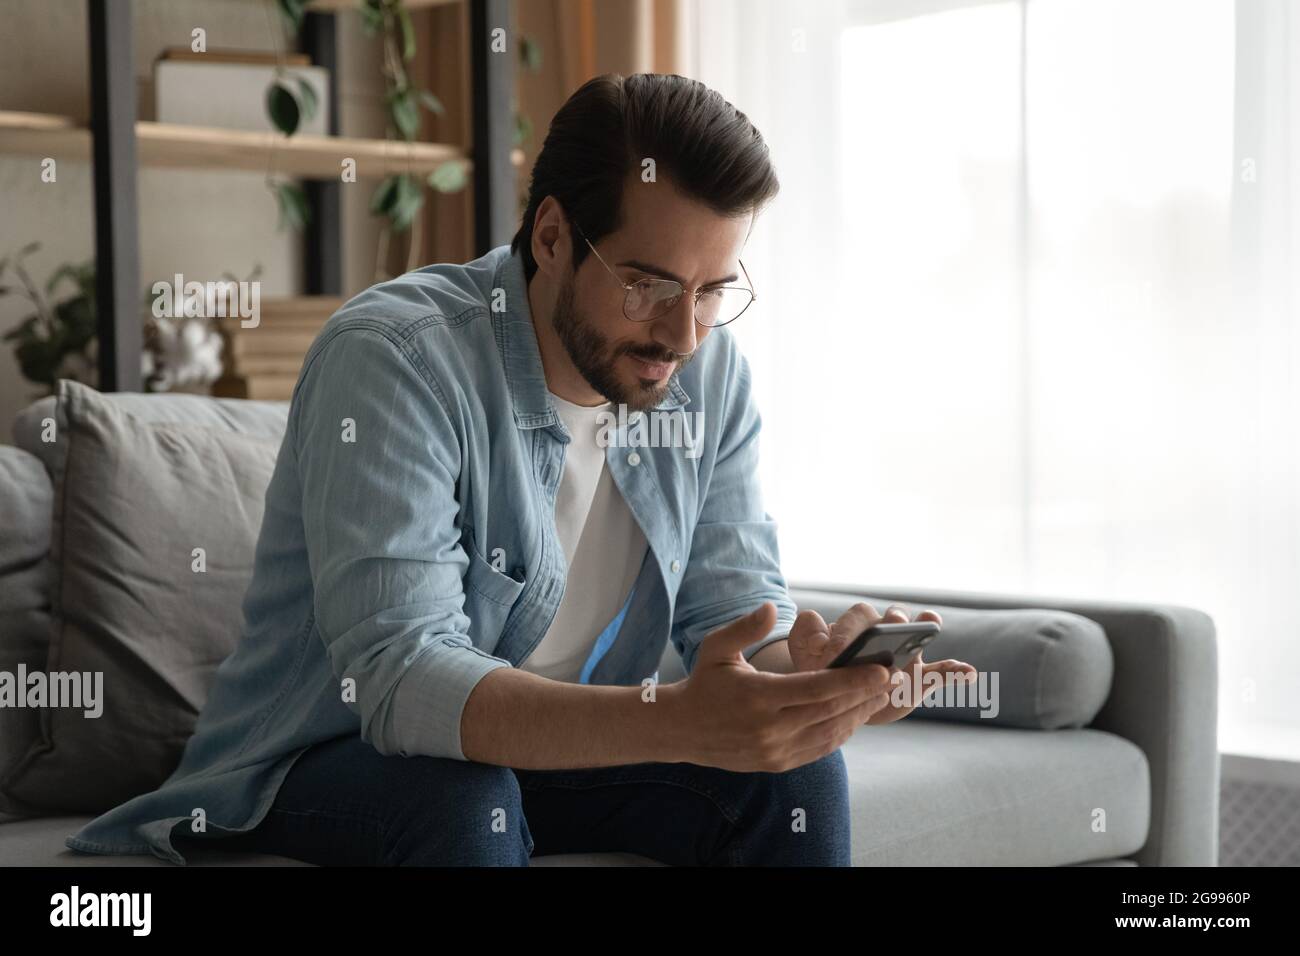 Un homme en lunettes s'assoit sur un canapé tenant le smartphone pour lire les messages Banque D'Images